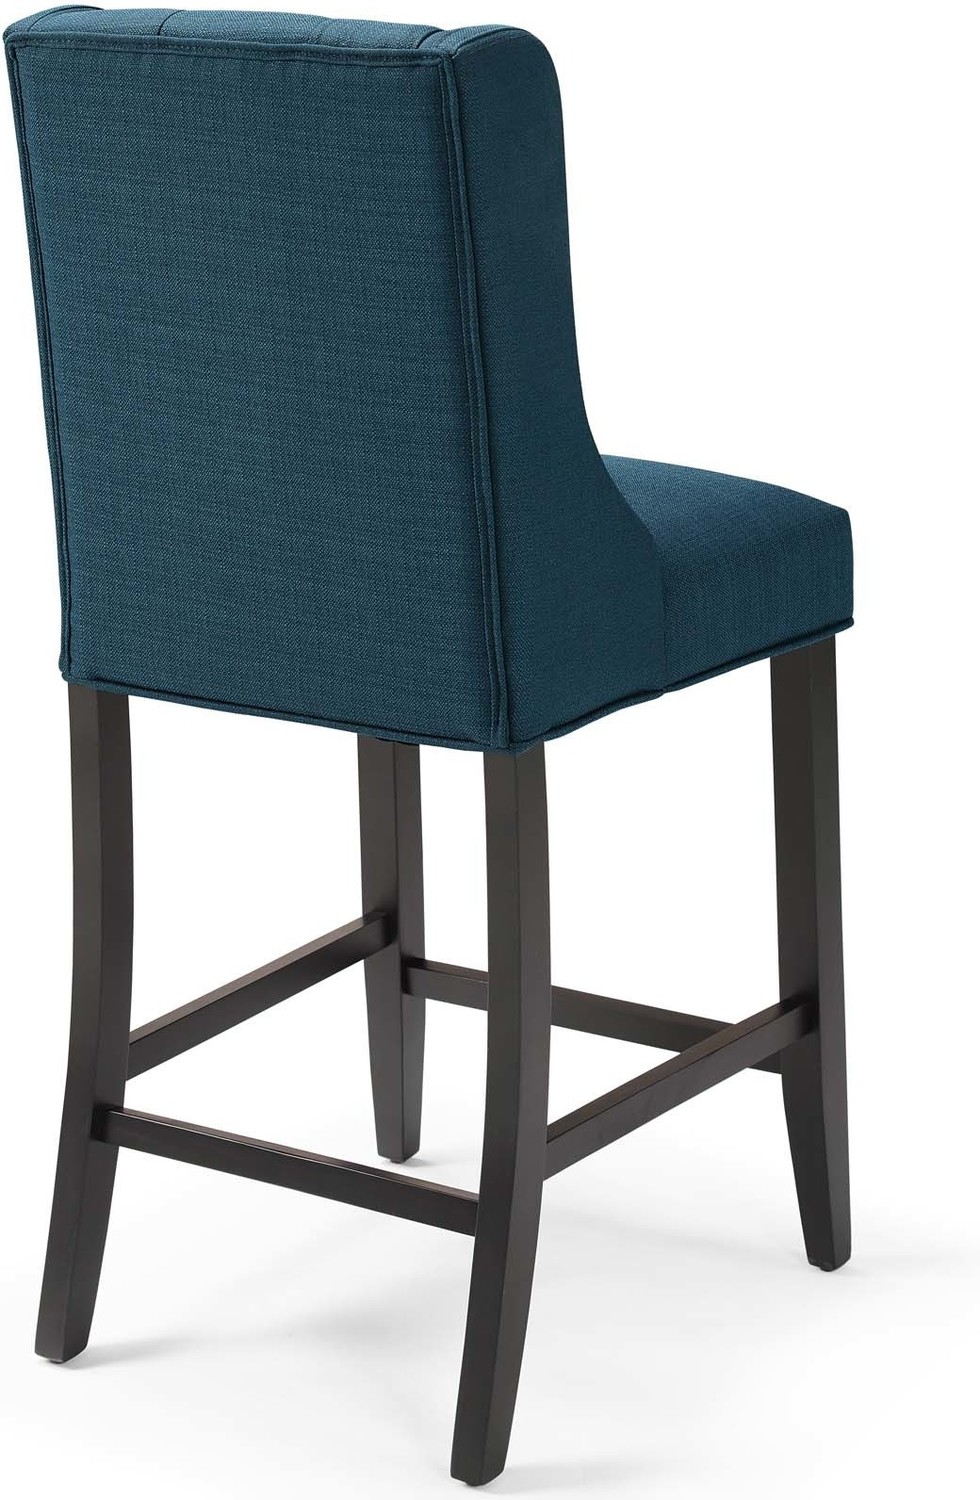 saddle bar stools bar height Modway Furniture Bar and Counter Stools Azure